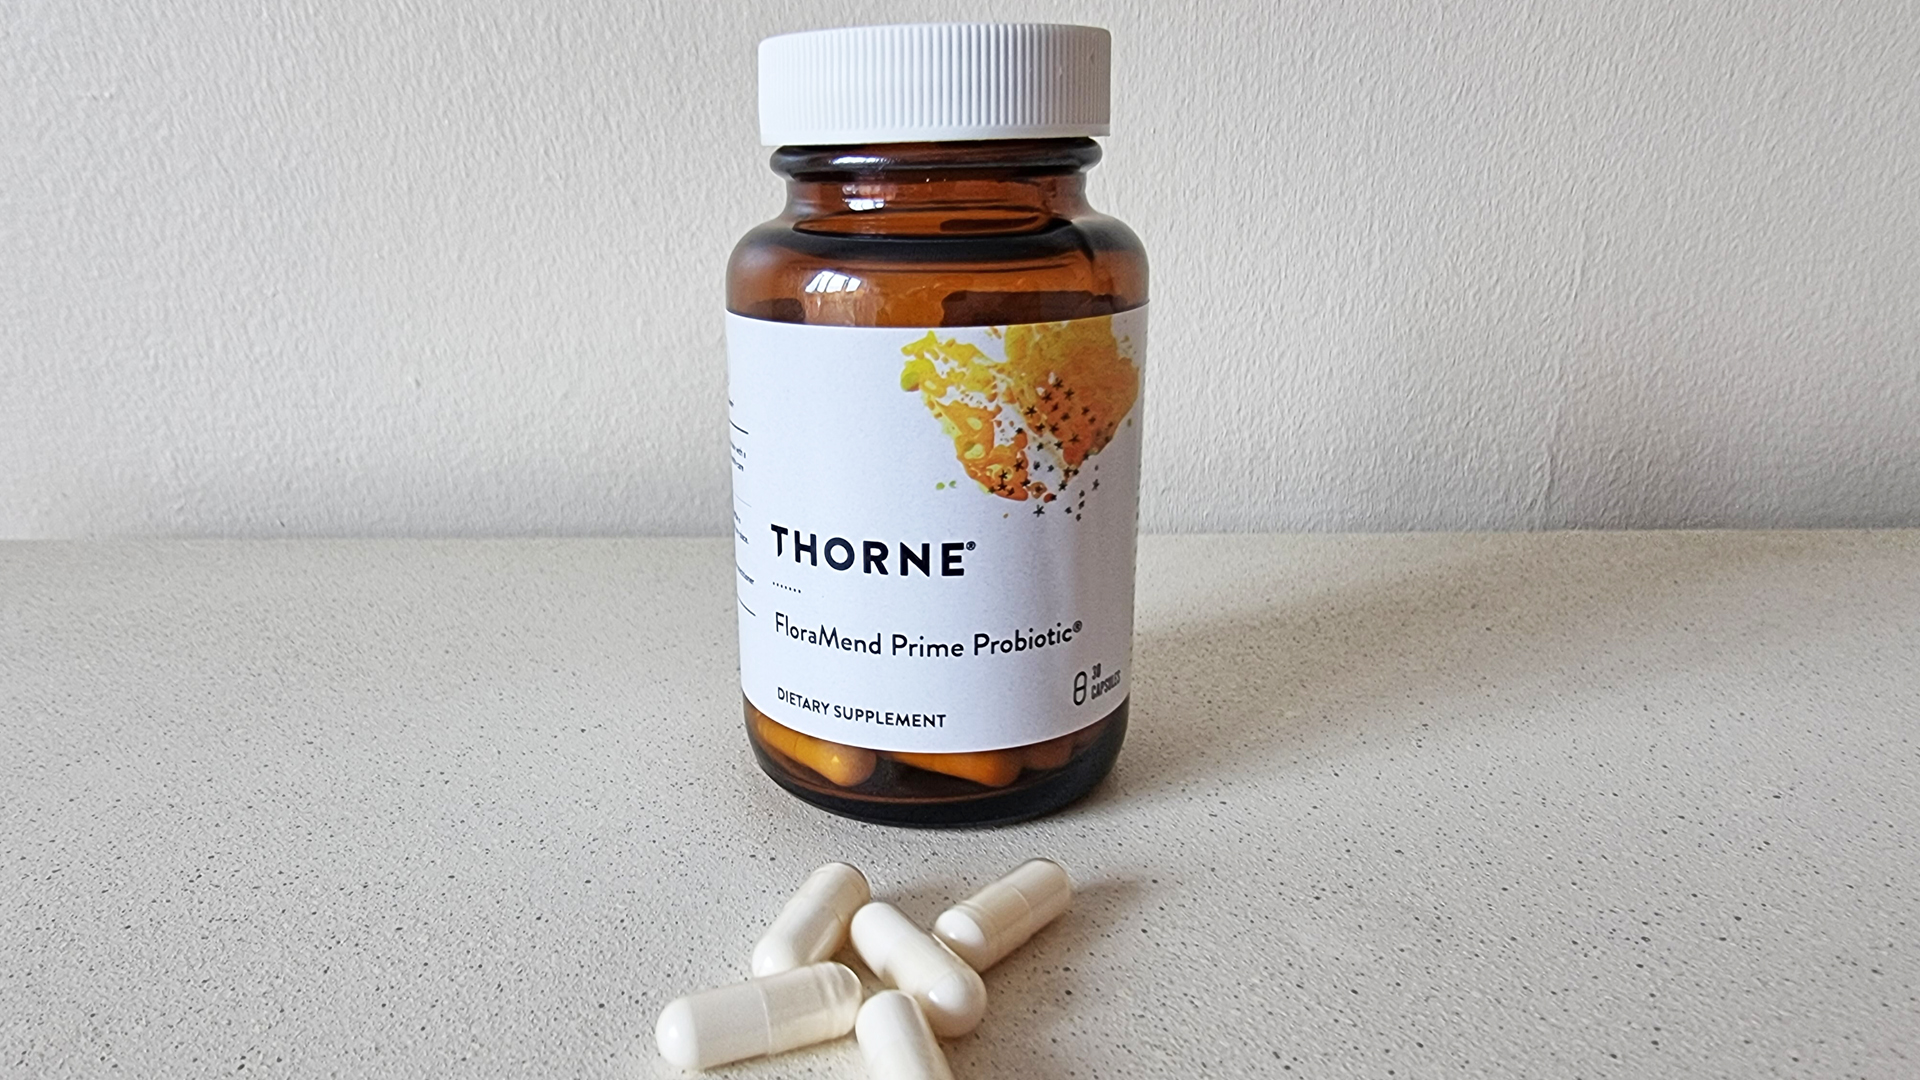 Thorne FloraMend Prime Probiotic supplement